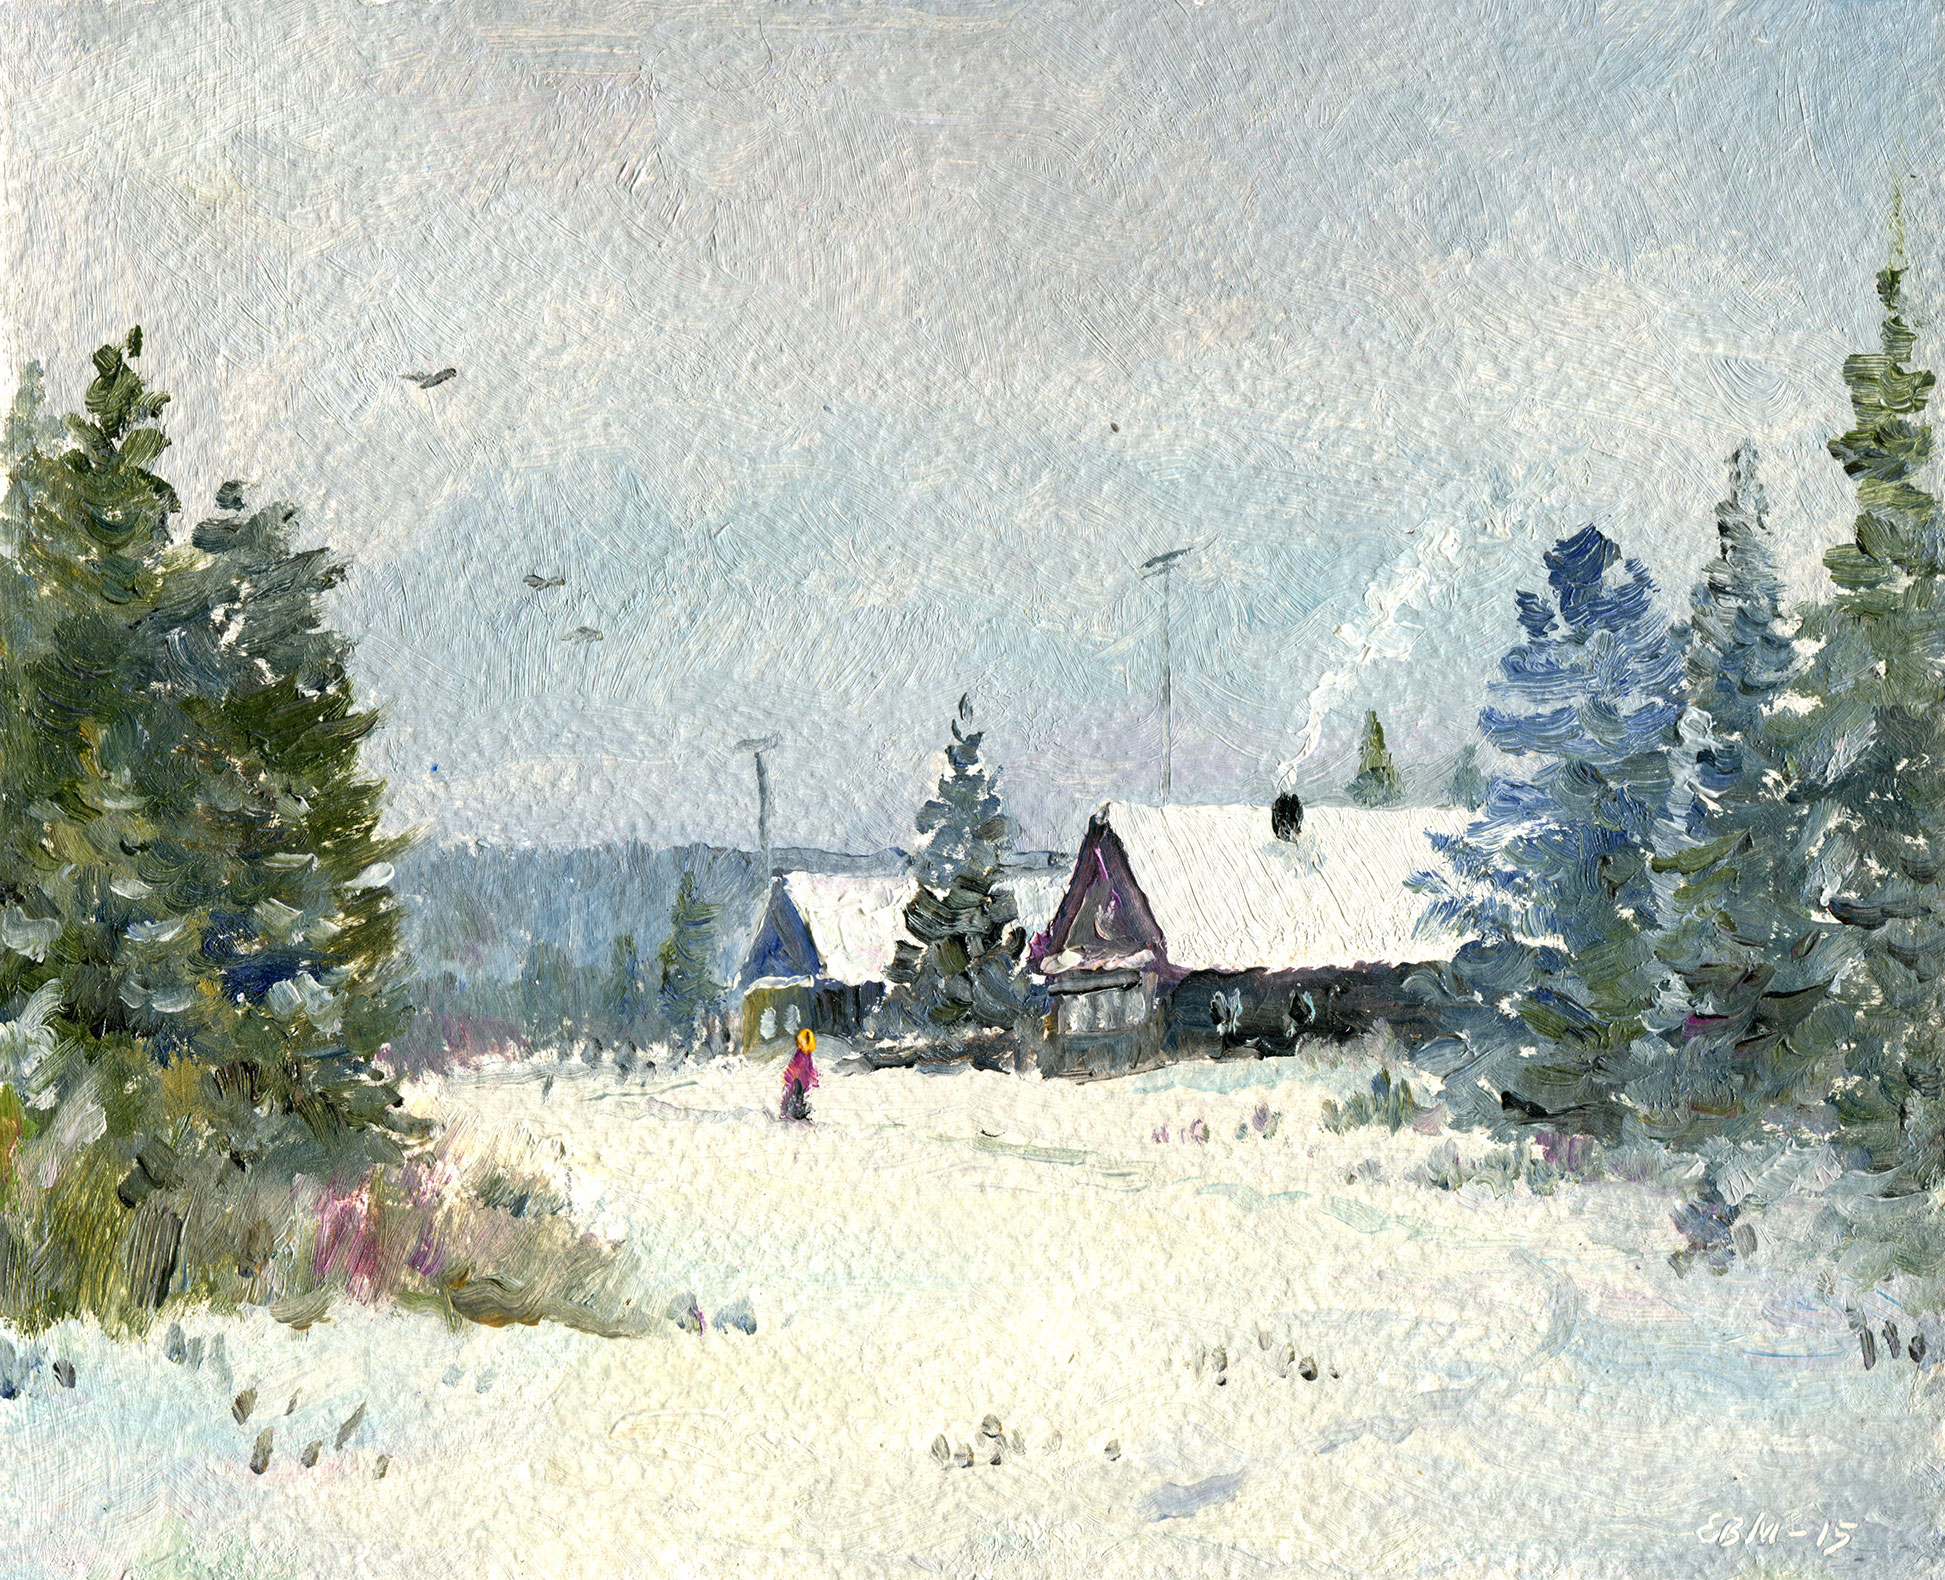  冬季風景 - 1,  瓦倫丁·埃夫雷莫夫, 买画 油